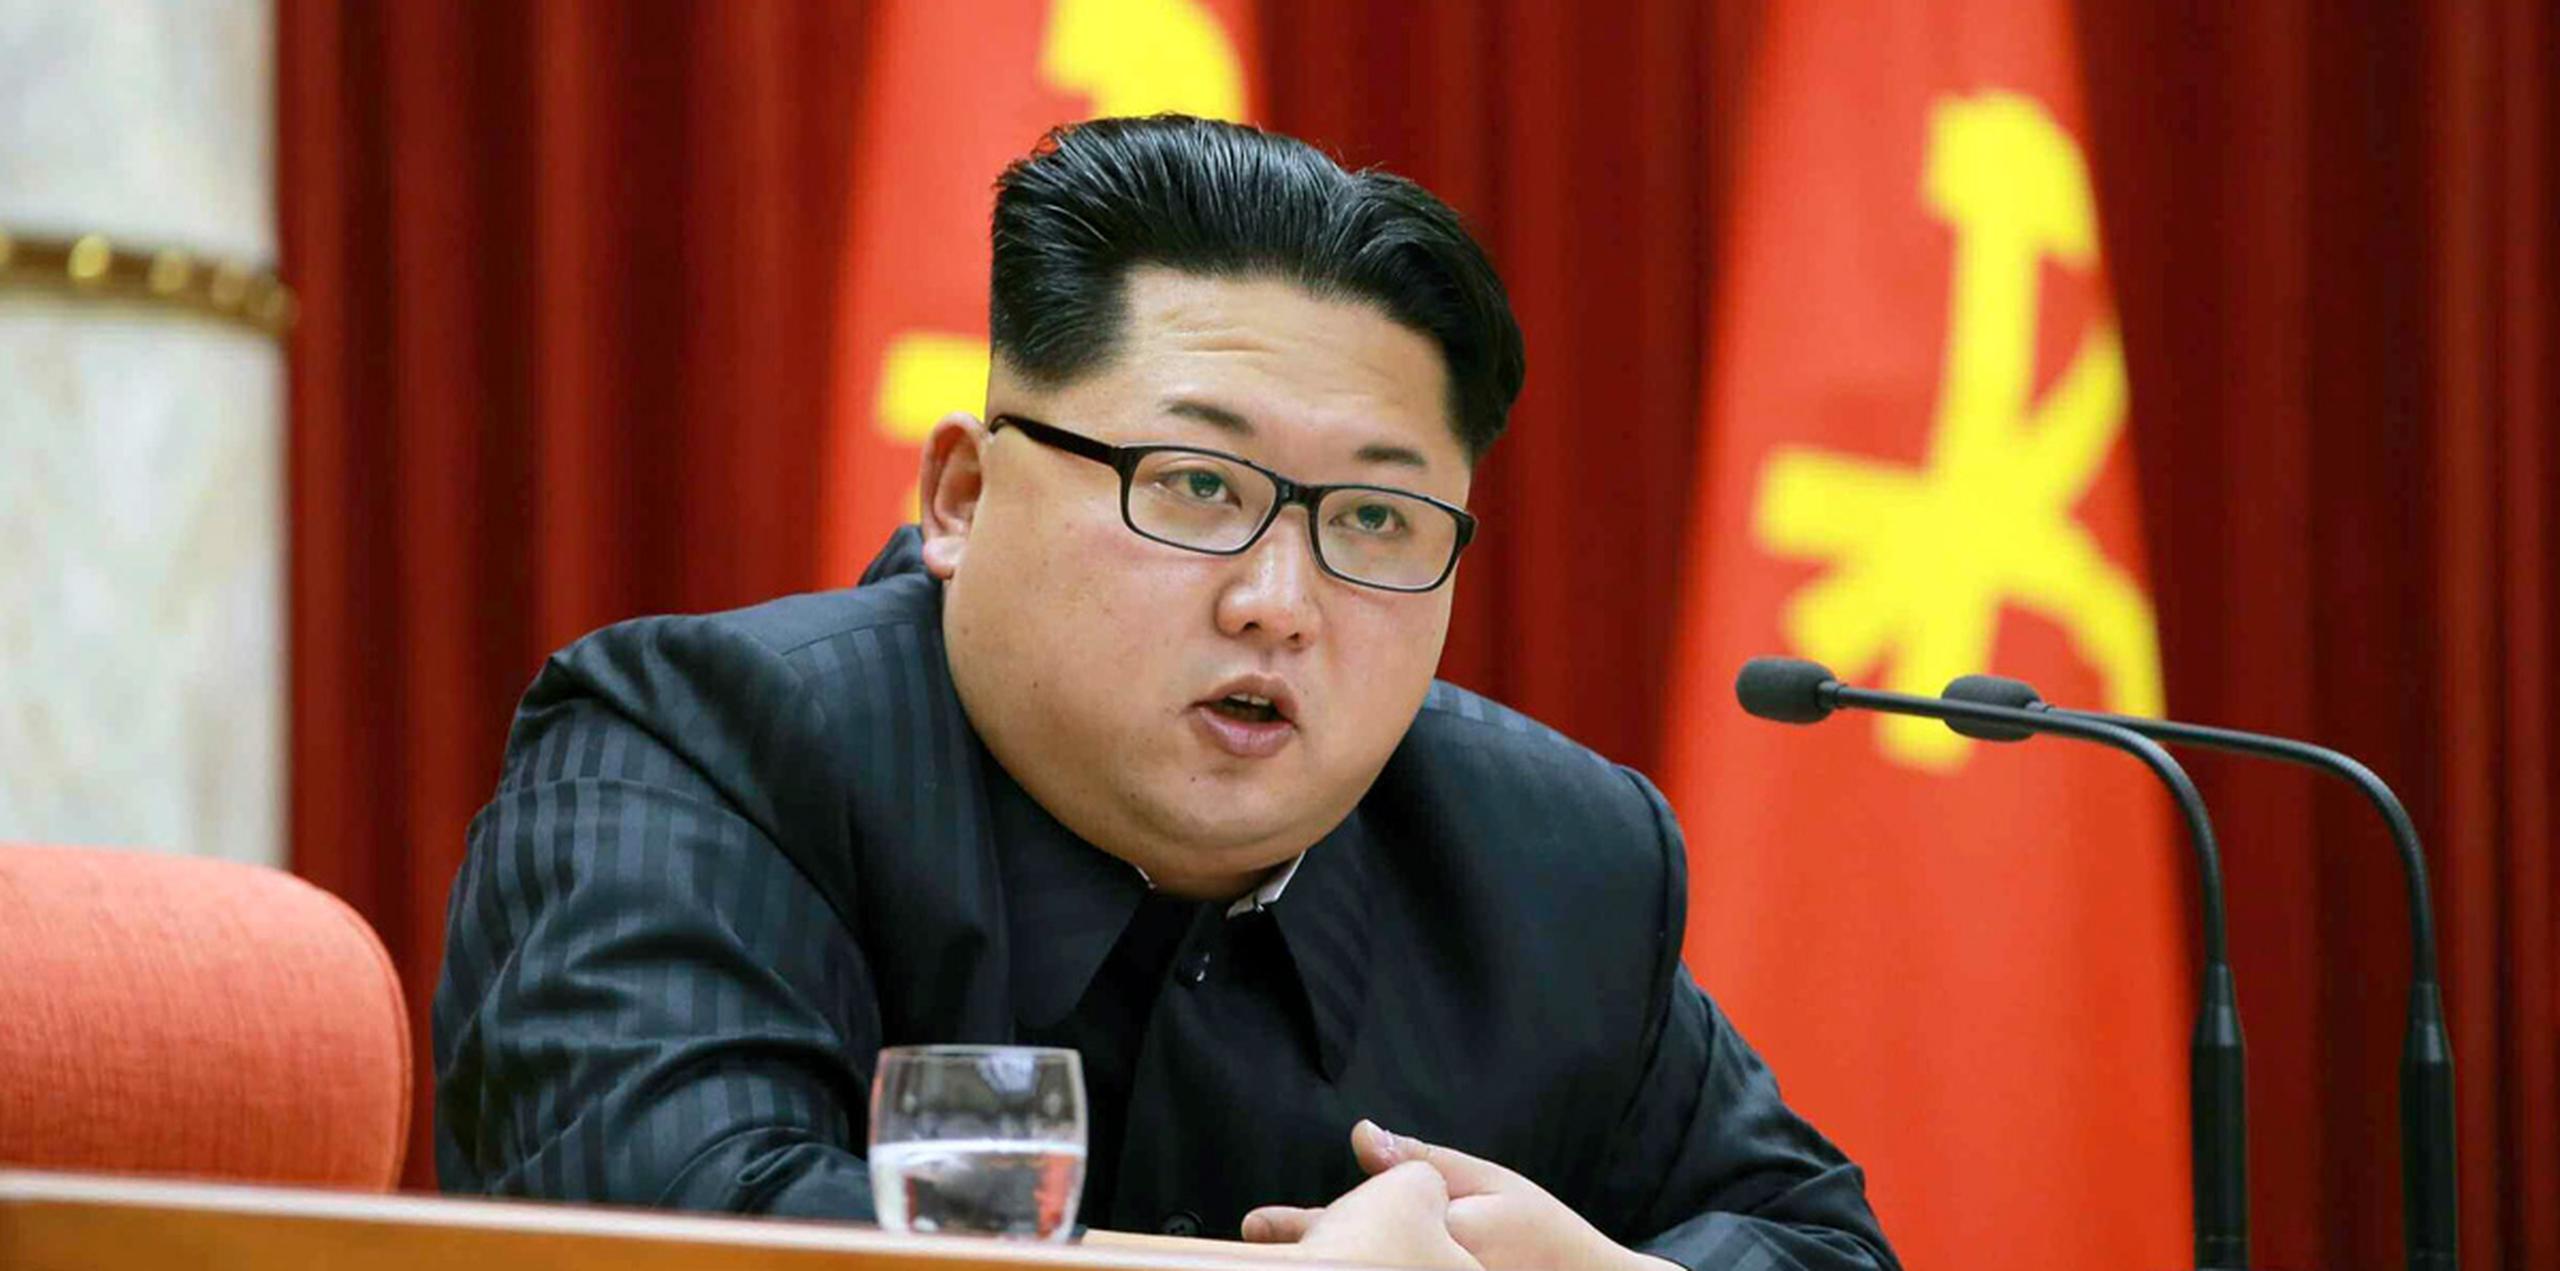 El Ministerio de Seguridad Estatal norcoreano aseguró hoy que habían detectado a un grupo infiltrado por la CIA y el Servicio Nacional de Inteligencia de Seúl para realizar "preparativos encubiertos y meticulosos" para atentar contra Kim "mediante el uso de sustancias químicas". (AP)